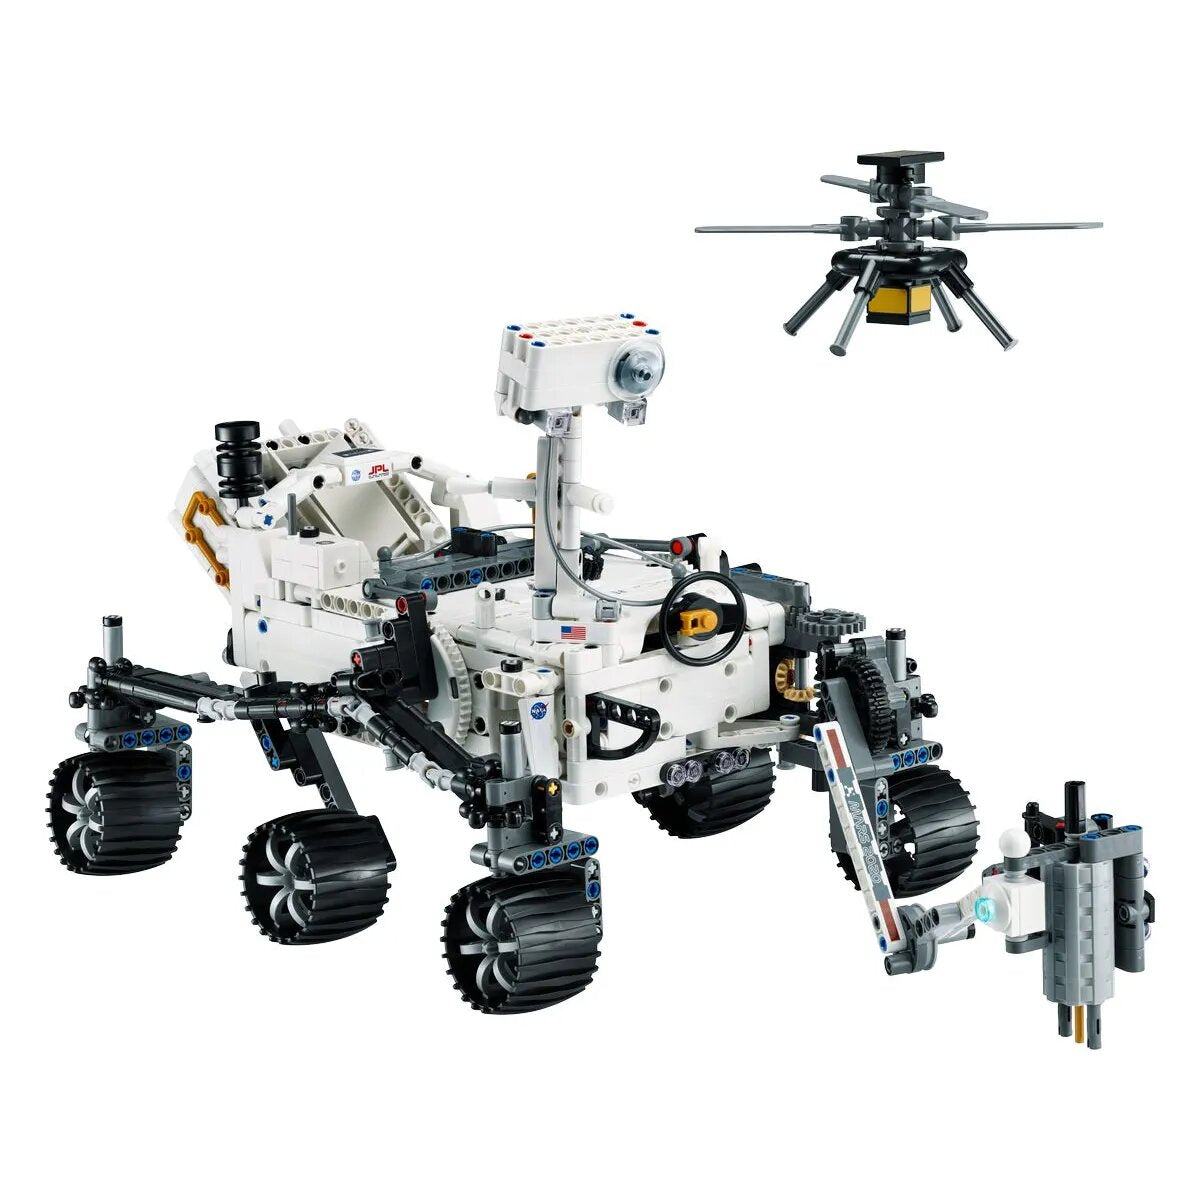 LEGO® Technic 42158 NASA Mars Rover Perseverance